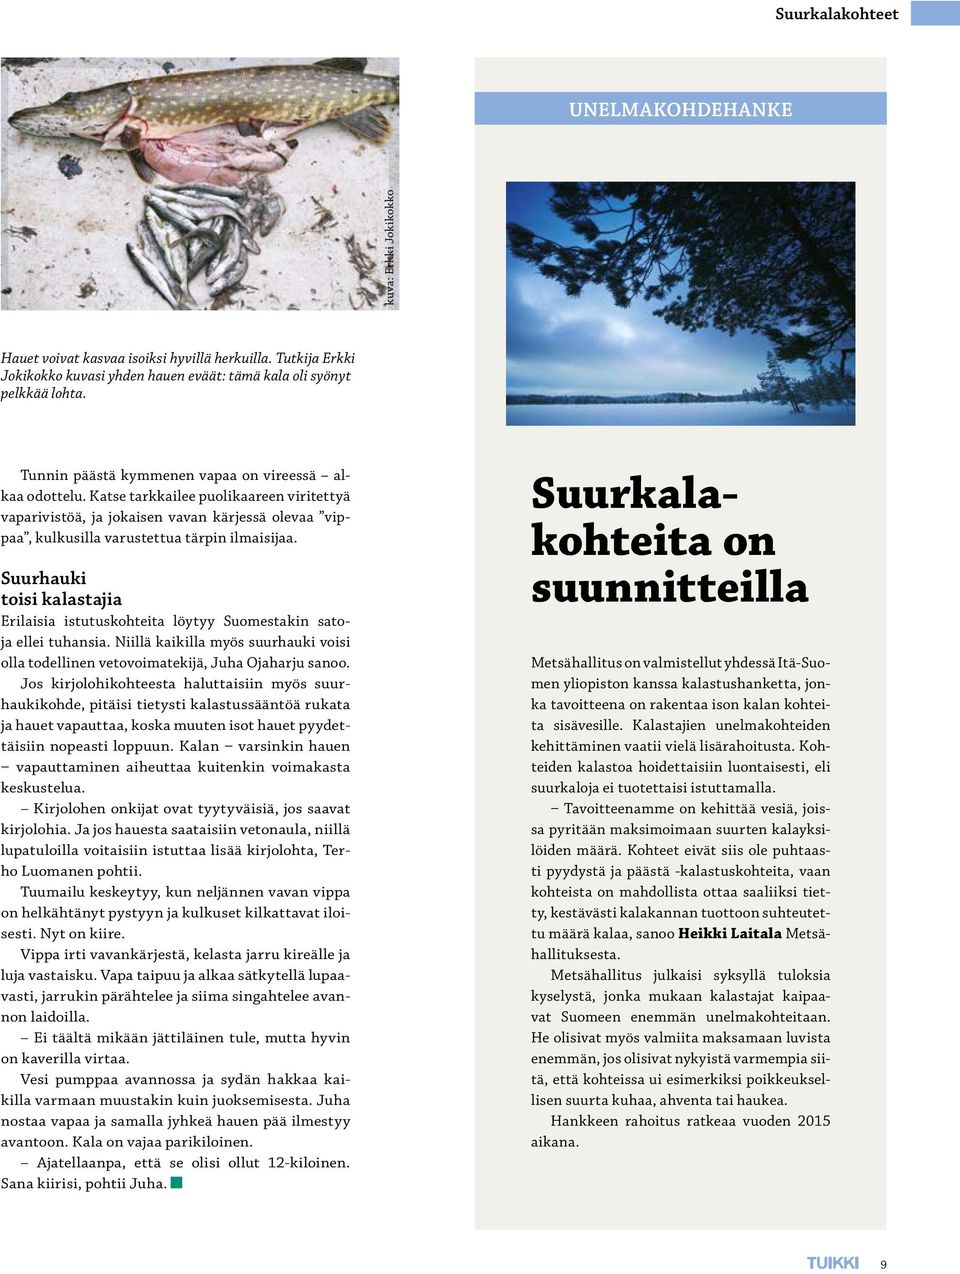 Suurhauki toisi kalastajia Erilaisia istutuskohteita löytyy Suomestakin satoja ellei tuhansia. Niillä kaikilla myös suurhauki voisi olla todellinen vetovoimatekijä, Juha Ojaharju sanoo.